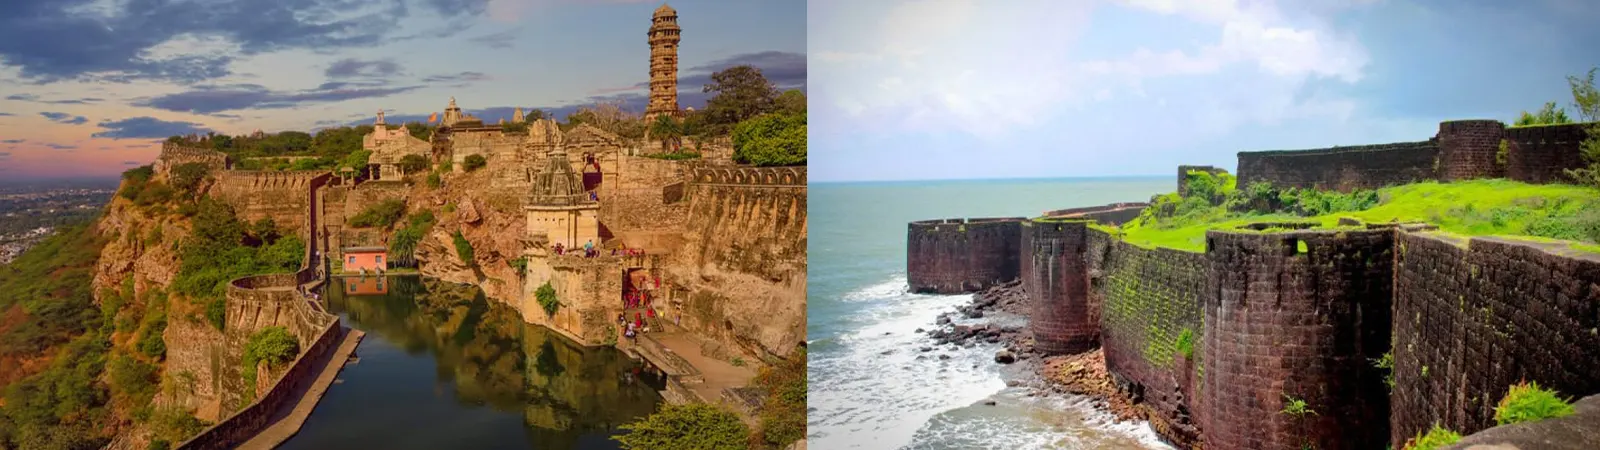 महाराष्ट्र के 10 सबसे प्रसिद्ध किले